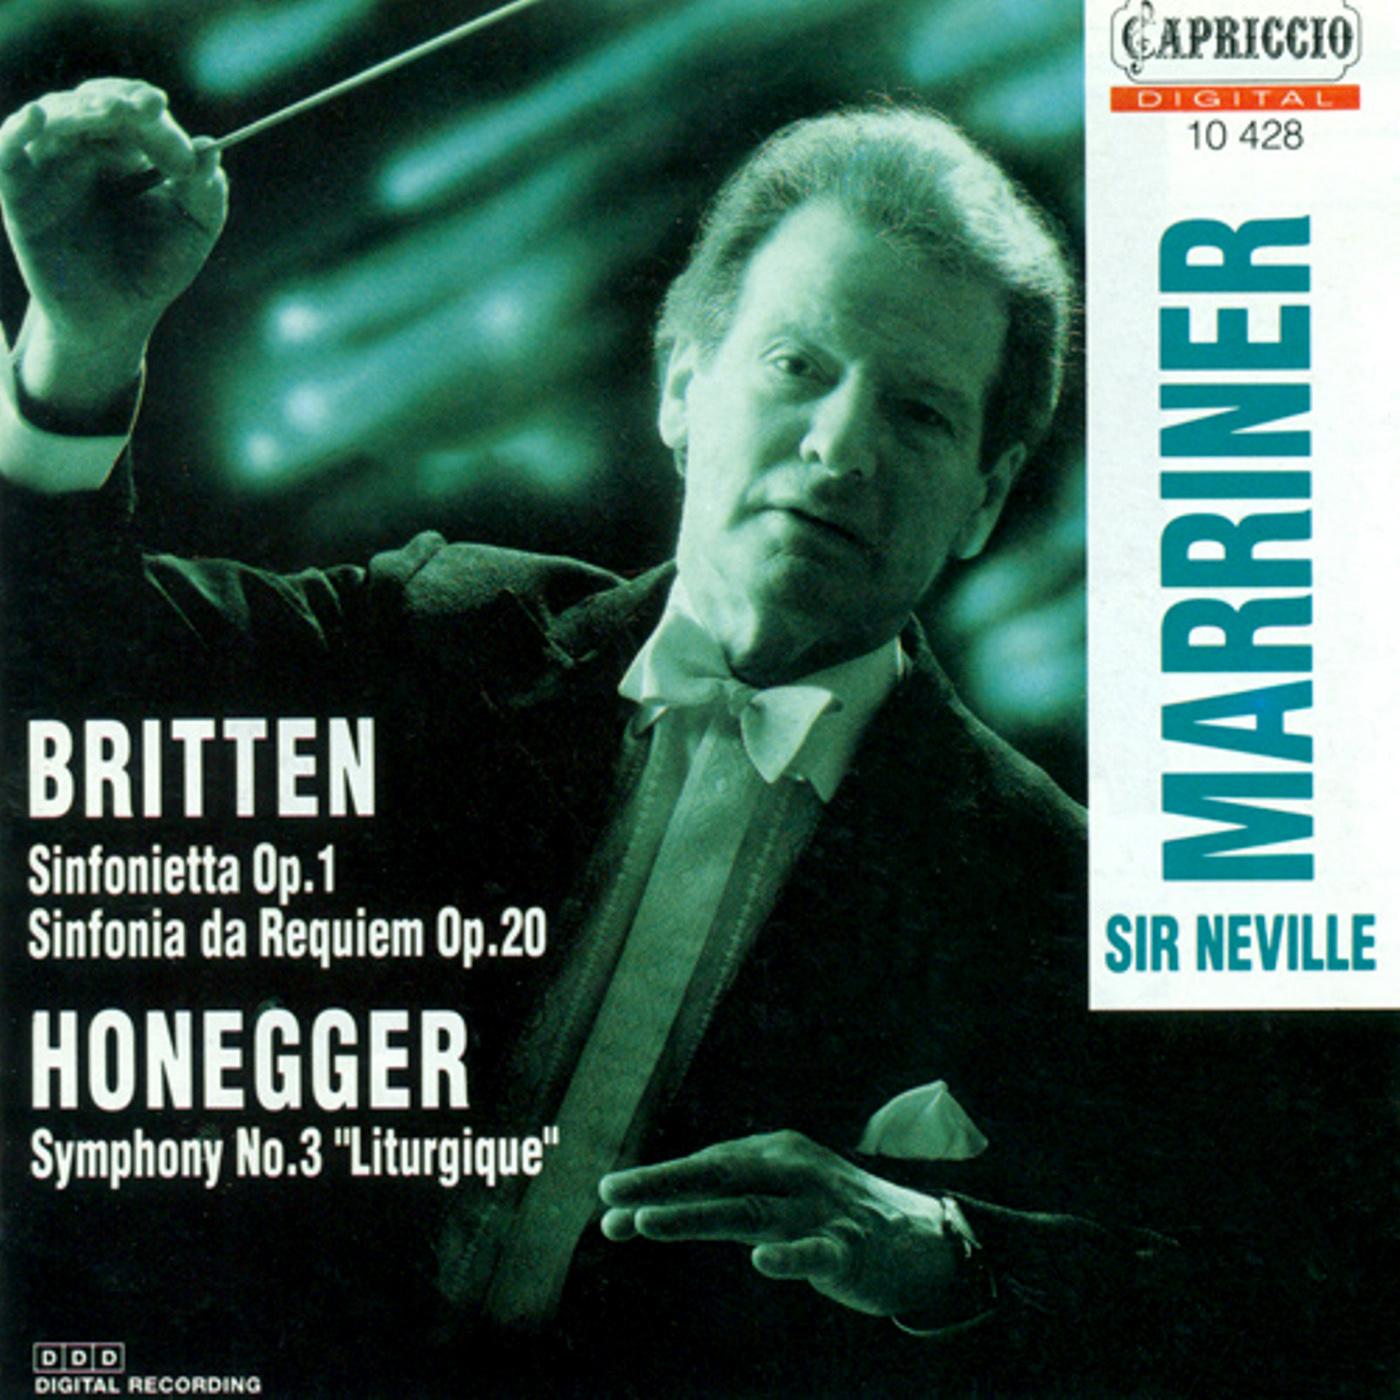 BRITTEN, B.: Sinfonietta, Op. 1 / Sinfonietta da Requiem / HONEGGER, A.: Symphony No. 3, "Liturgique专辑